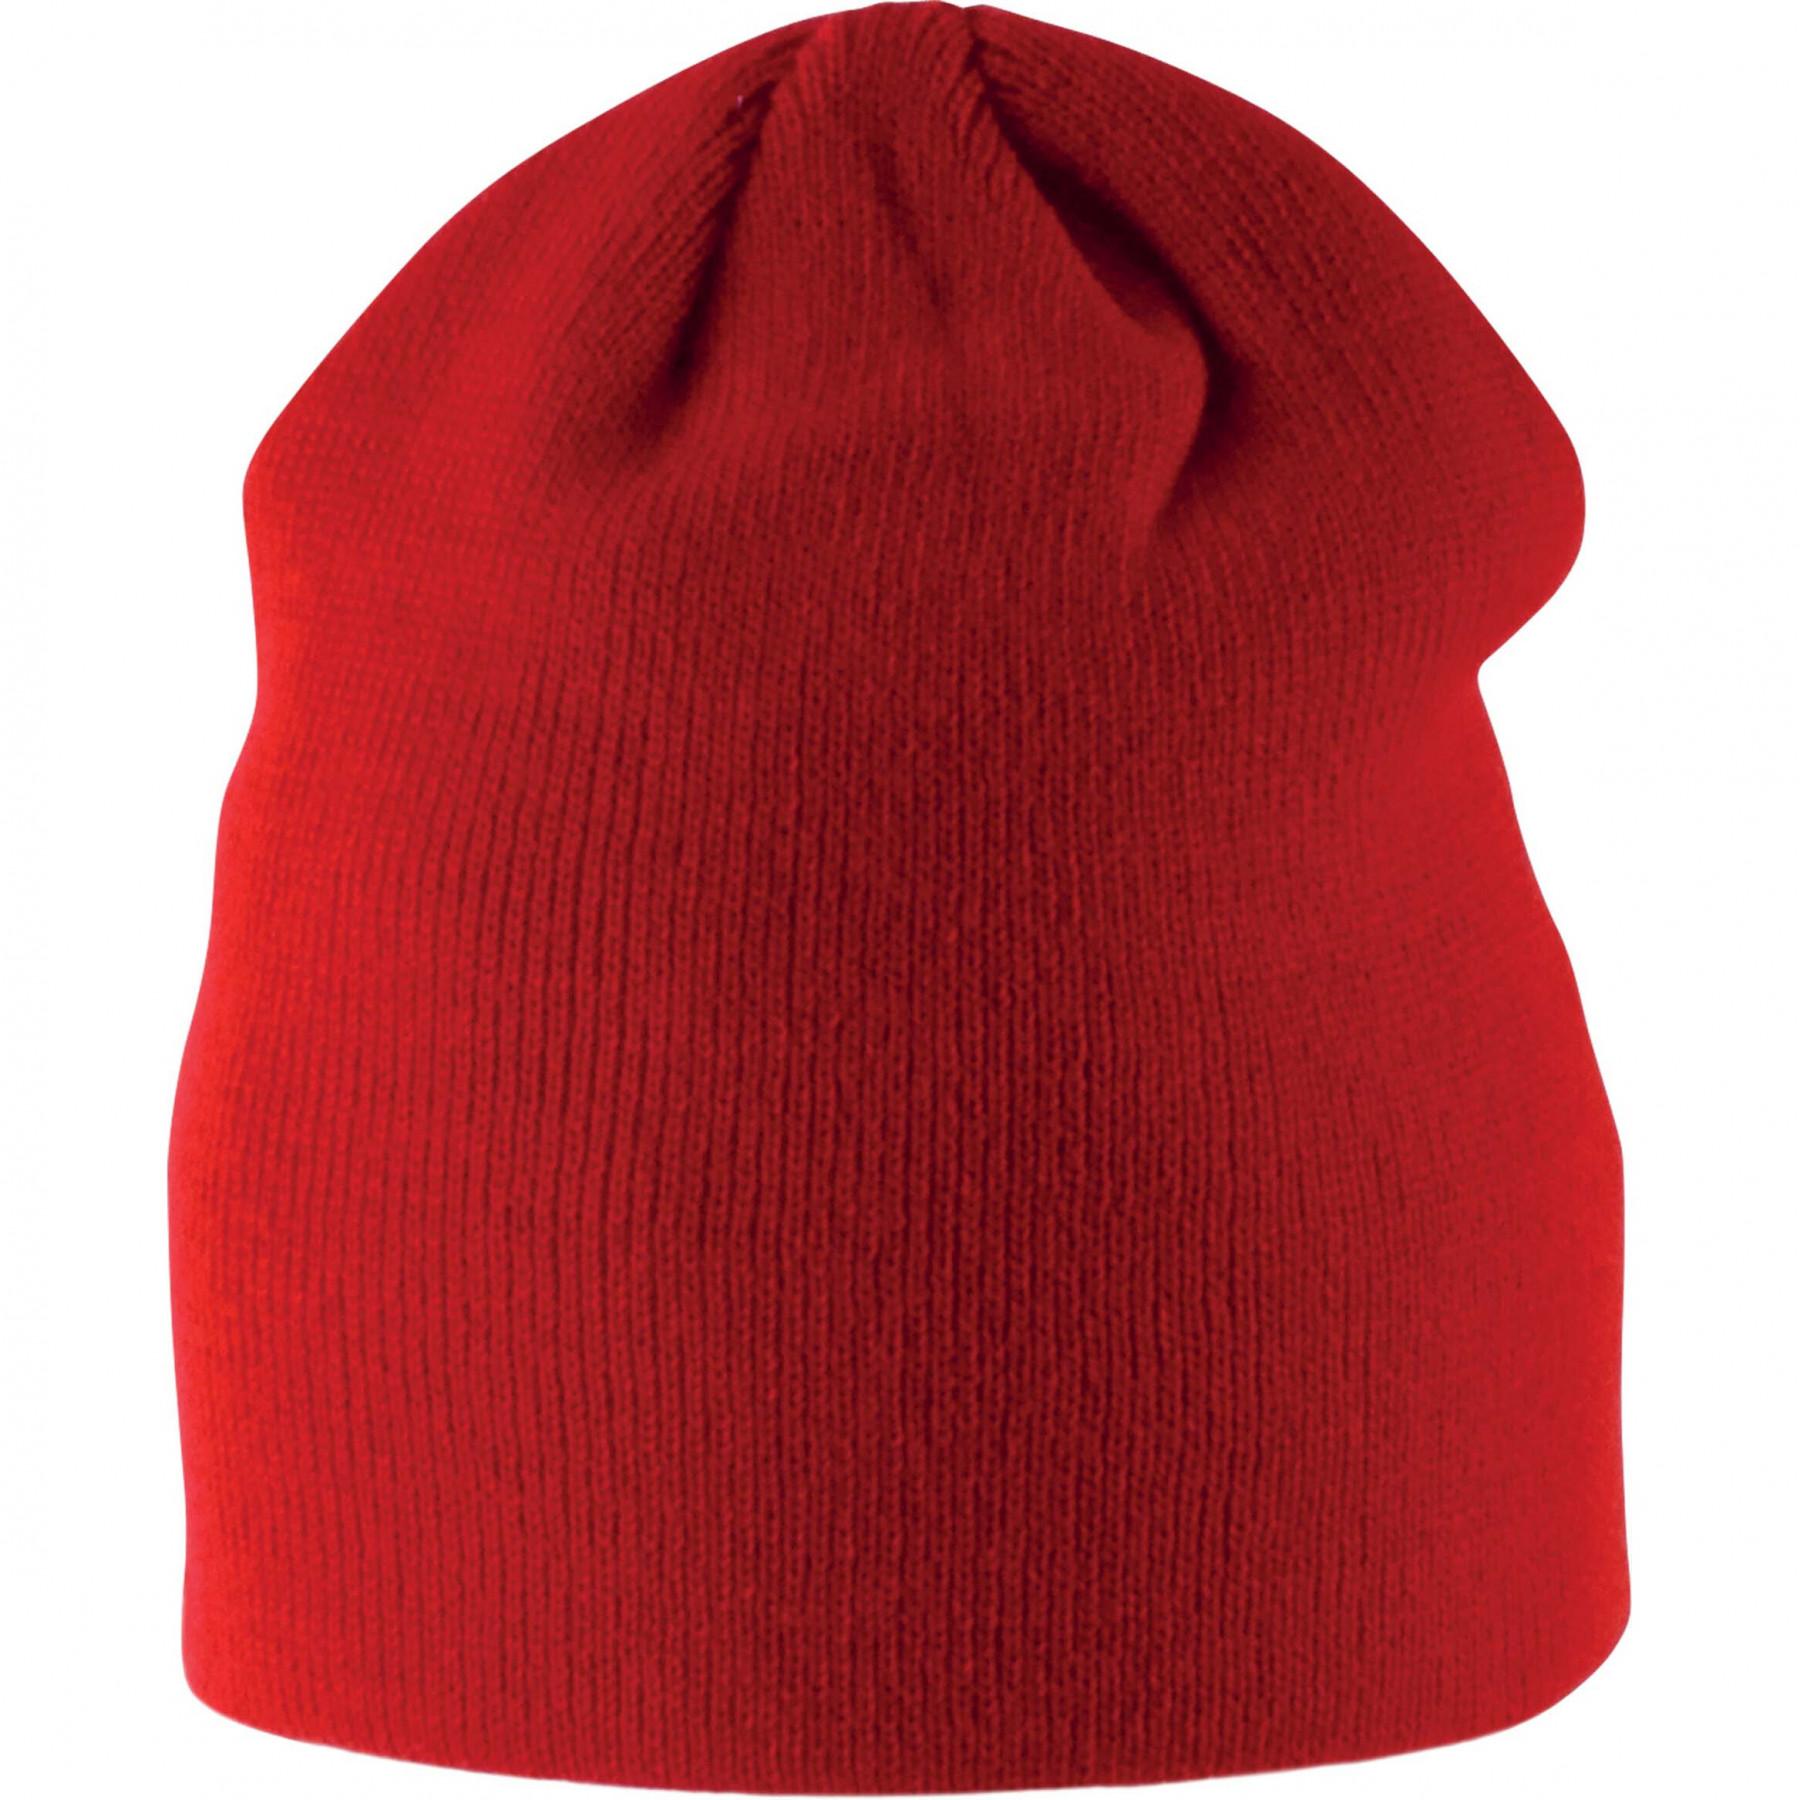 Children's hat K-Up Tricoté